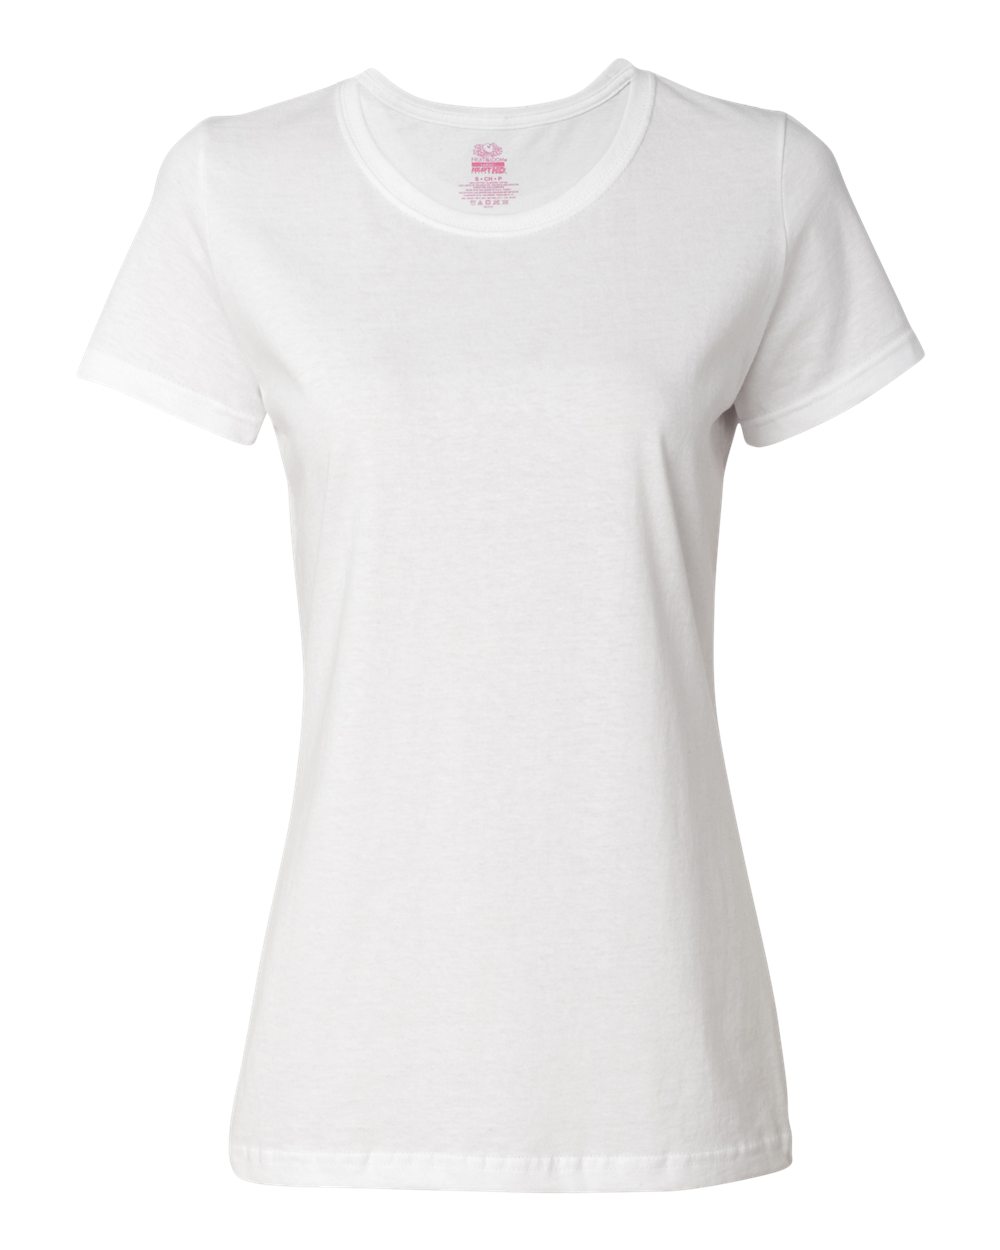 HD Cotton Womens Short Sleeve T-Shirt-